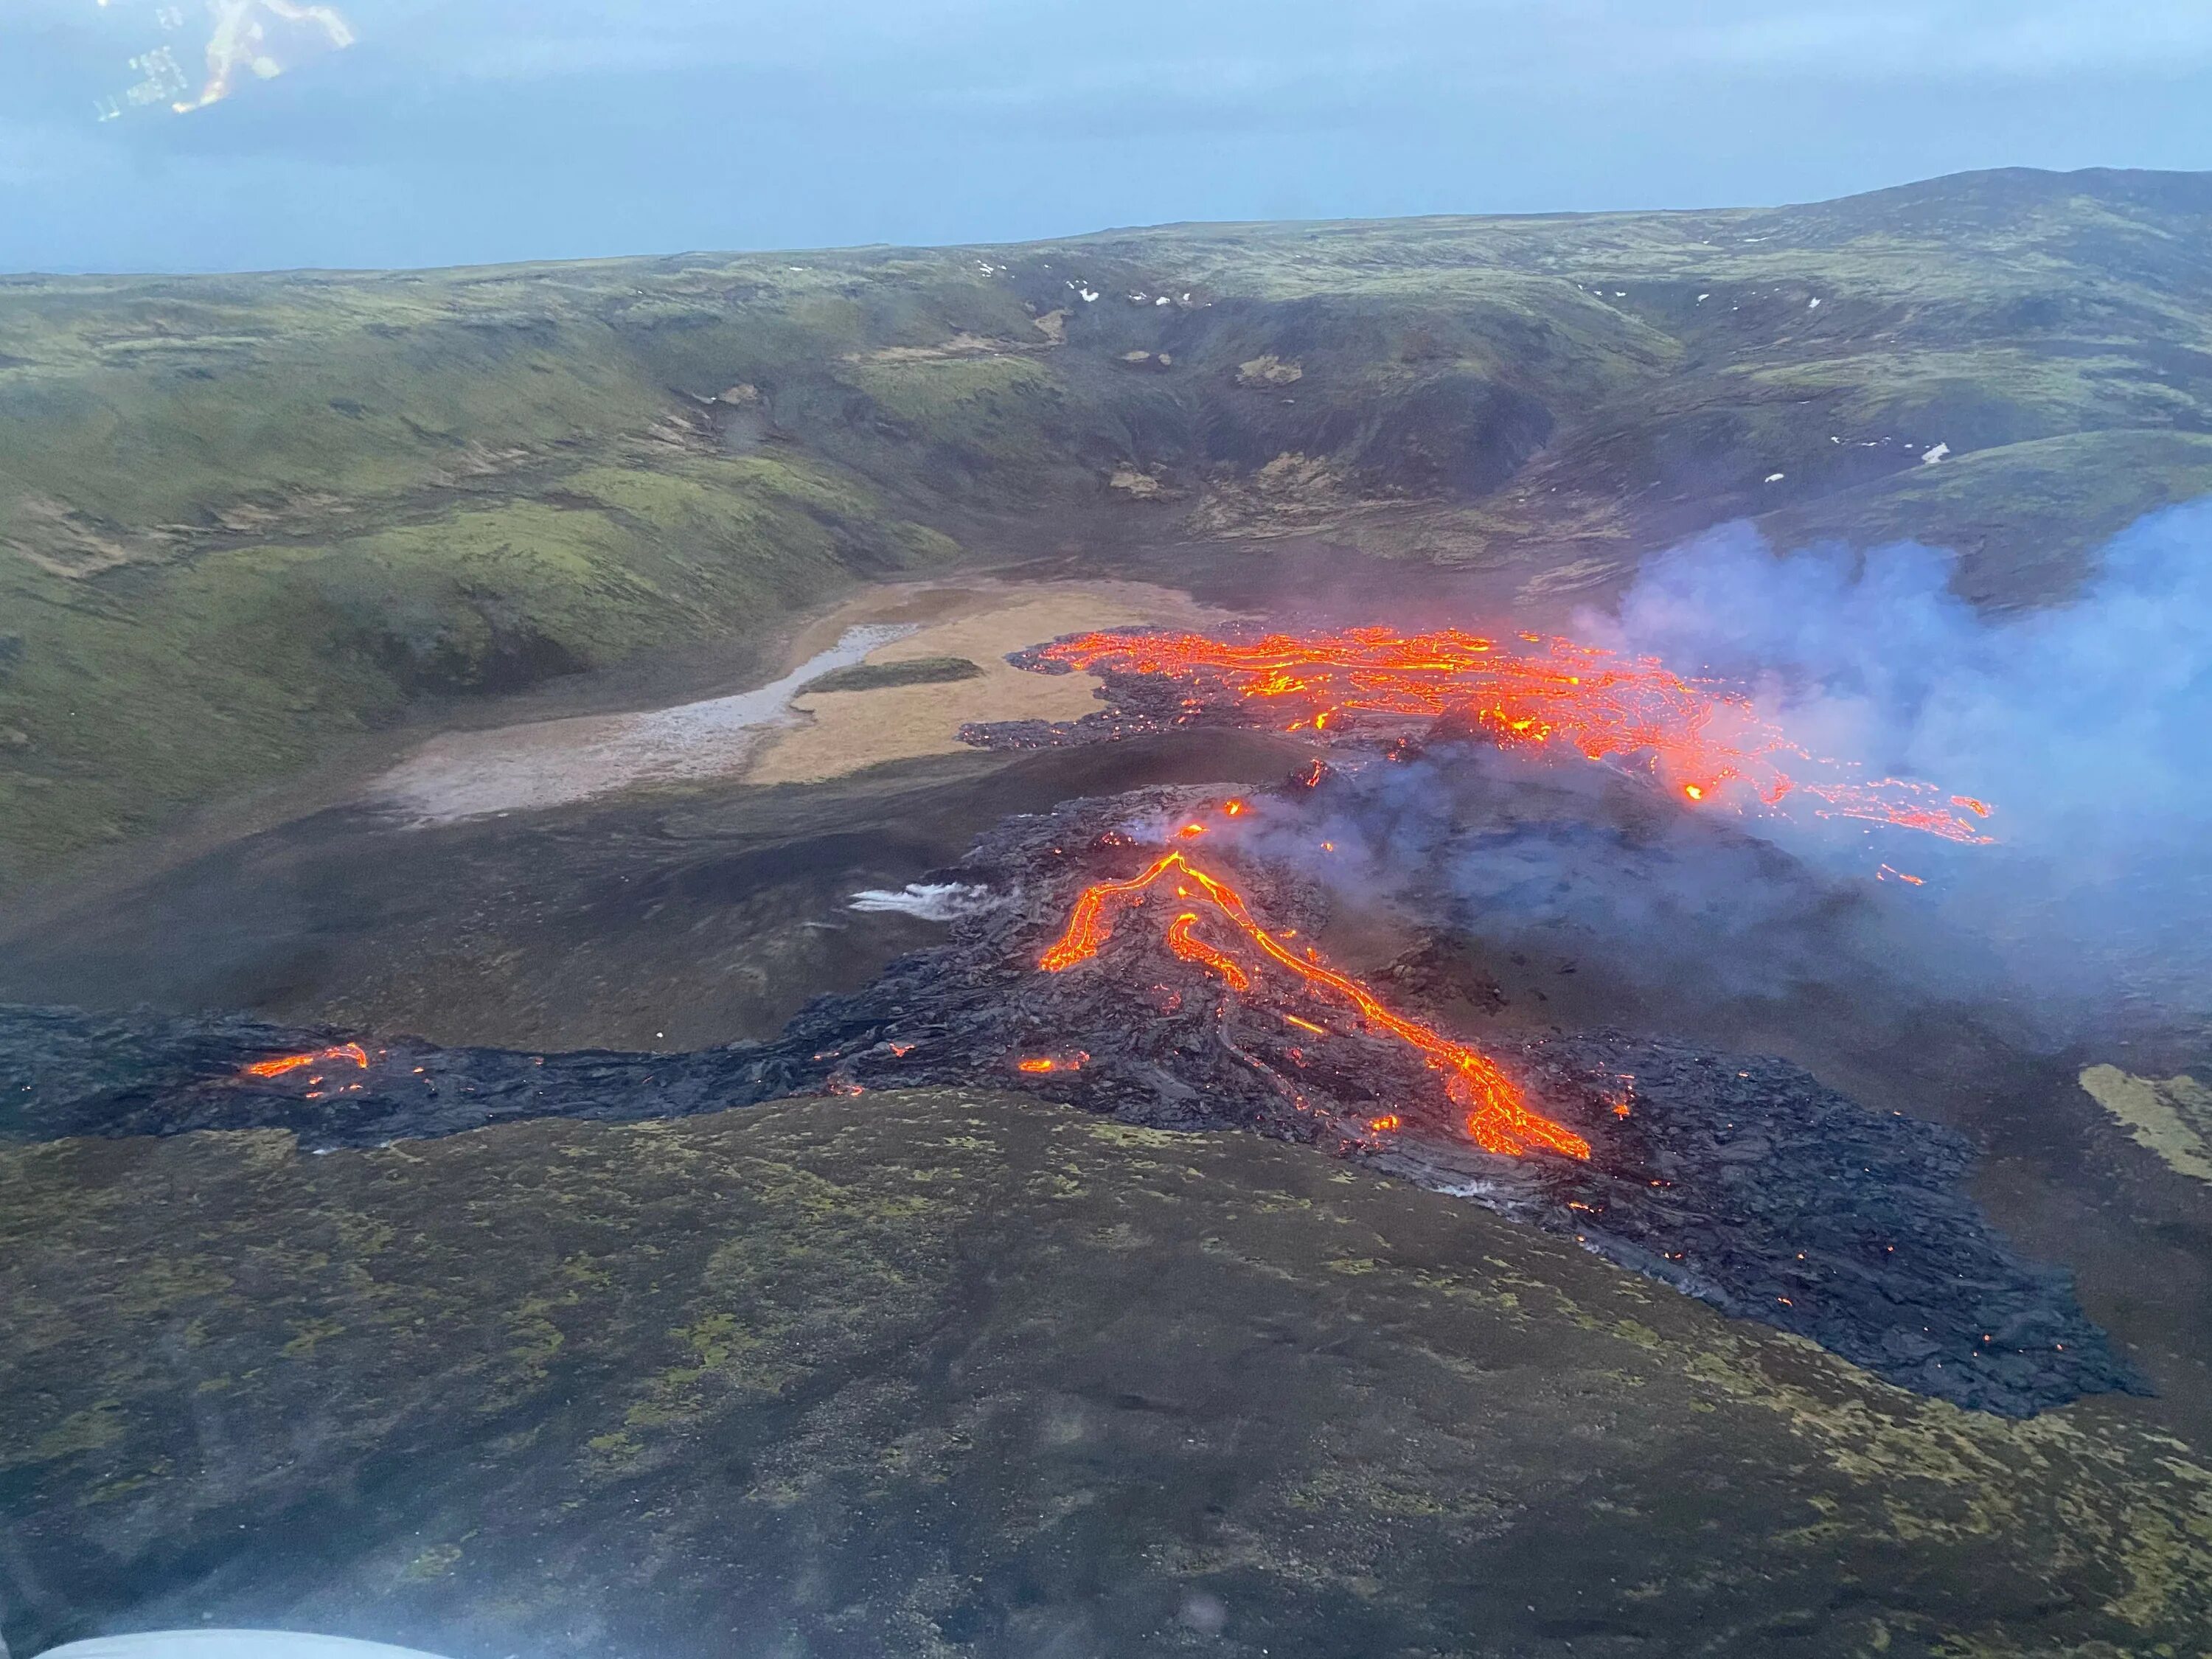 Извержение вулкана в Исландии 2021. Извержение вулкана в Исландии Эйяфьятлайокудль. Вулкан Исландии Эйяфьятлайокудль 2010. Вулкан Эйяфьятлайокудль извержение 2010. Вулкан начал извергаться